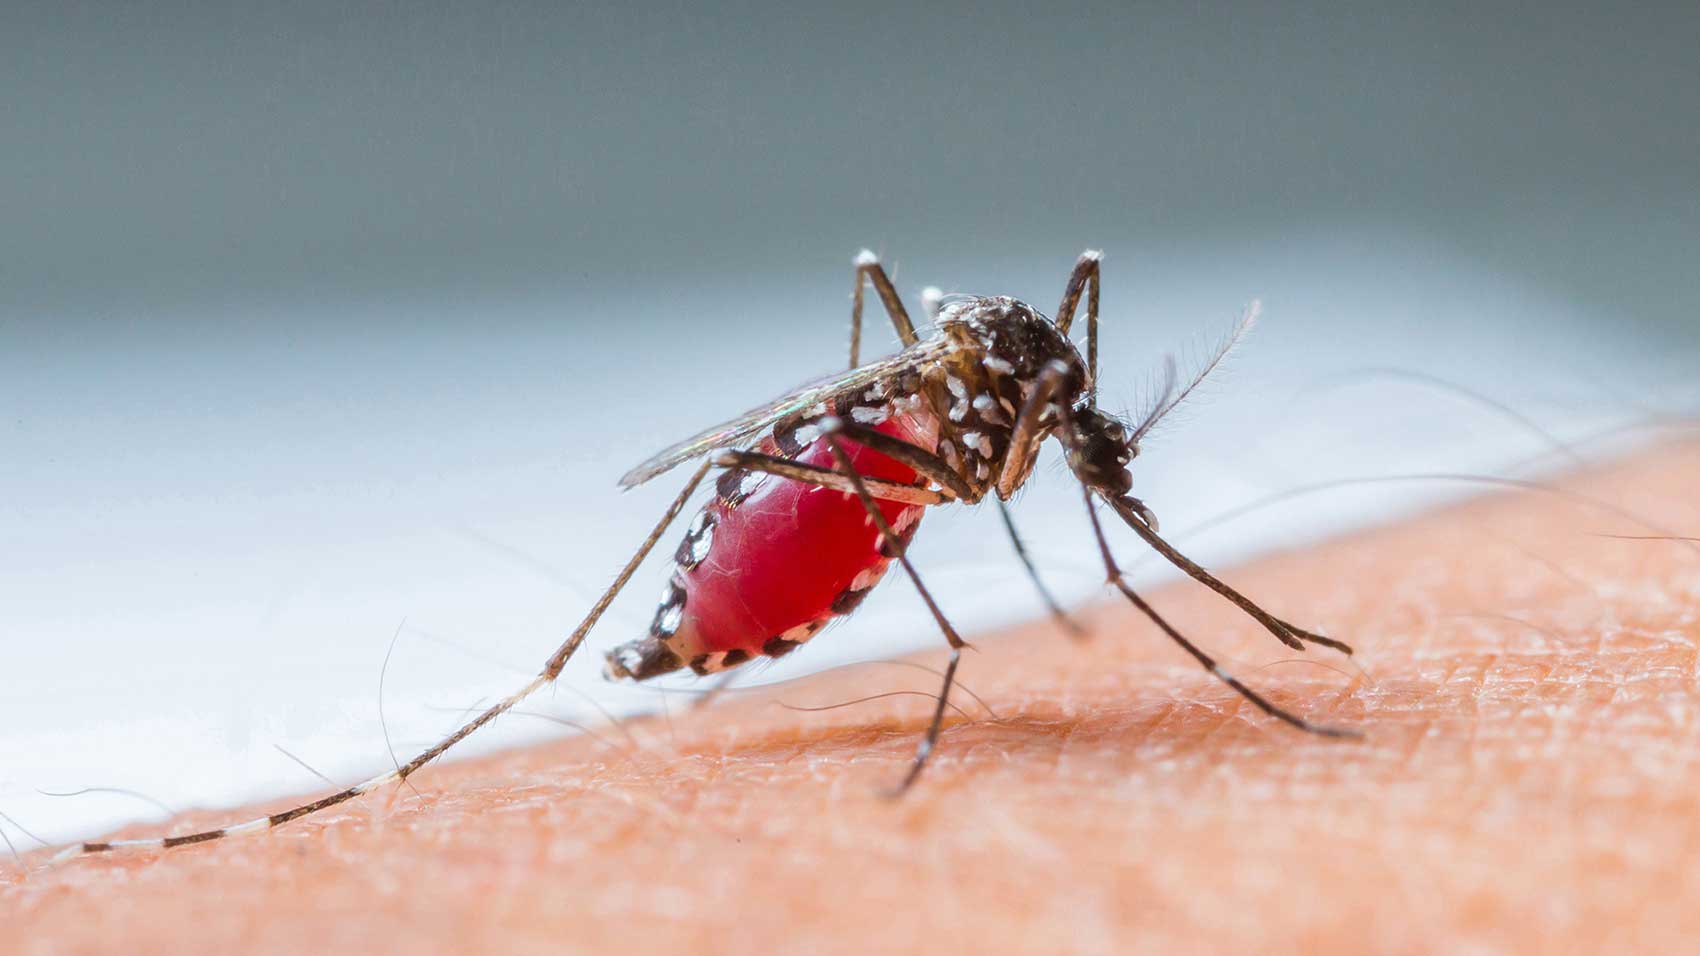 Comment les moustiques propagent-ils une maladie?